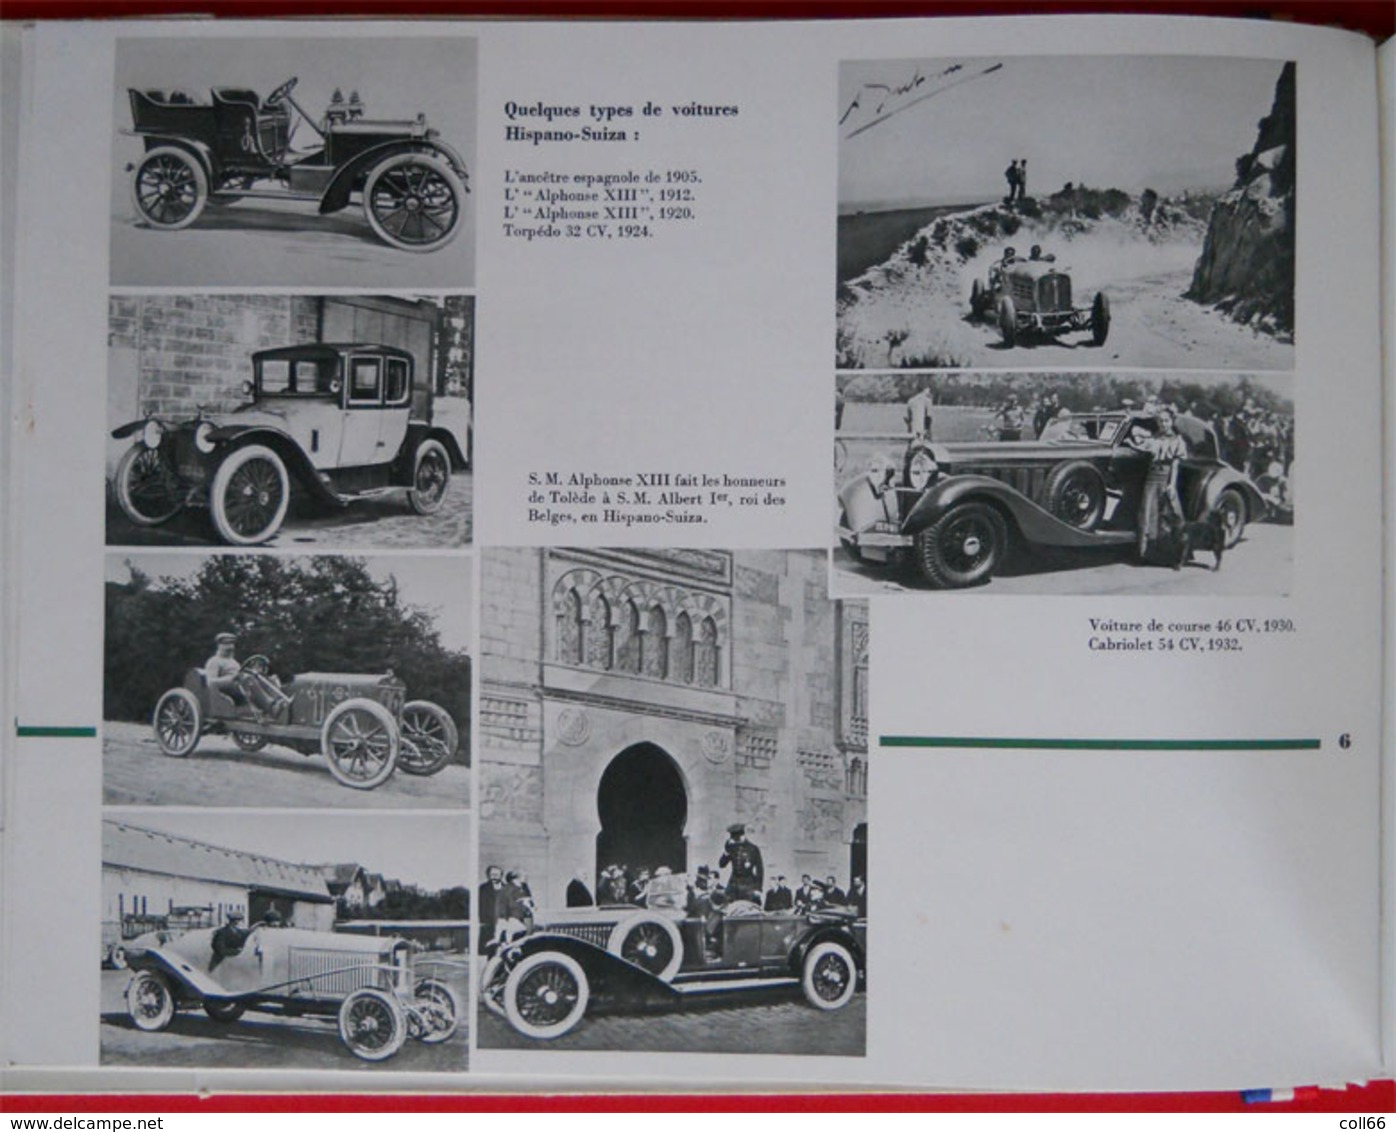 Plaquette Publicité Hispano-Suiza 1911-1961 avec 2 CDV Robert Blum et Maurice Heurteux imp Firmin-Didot